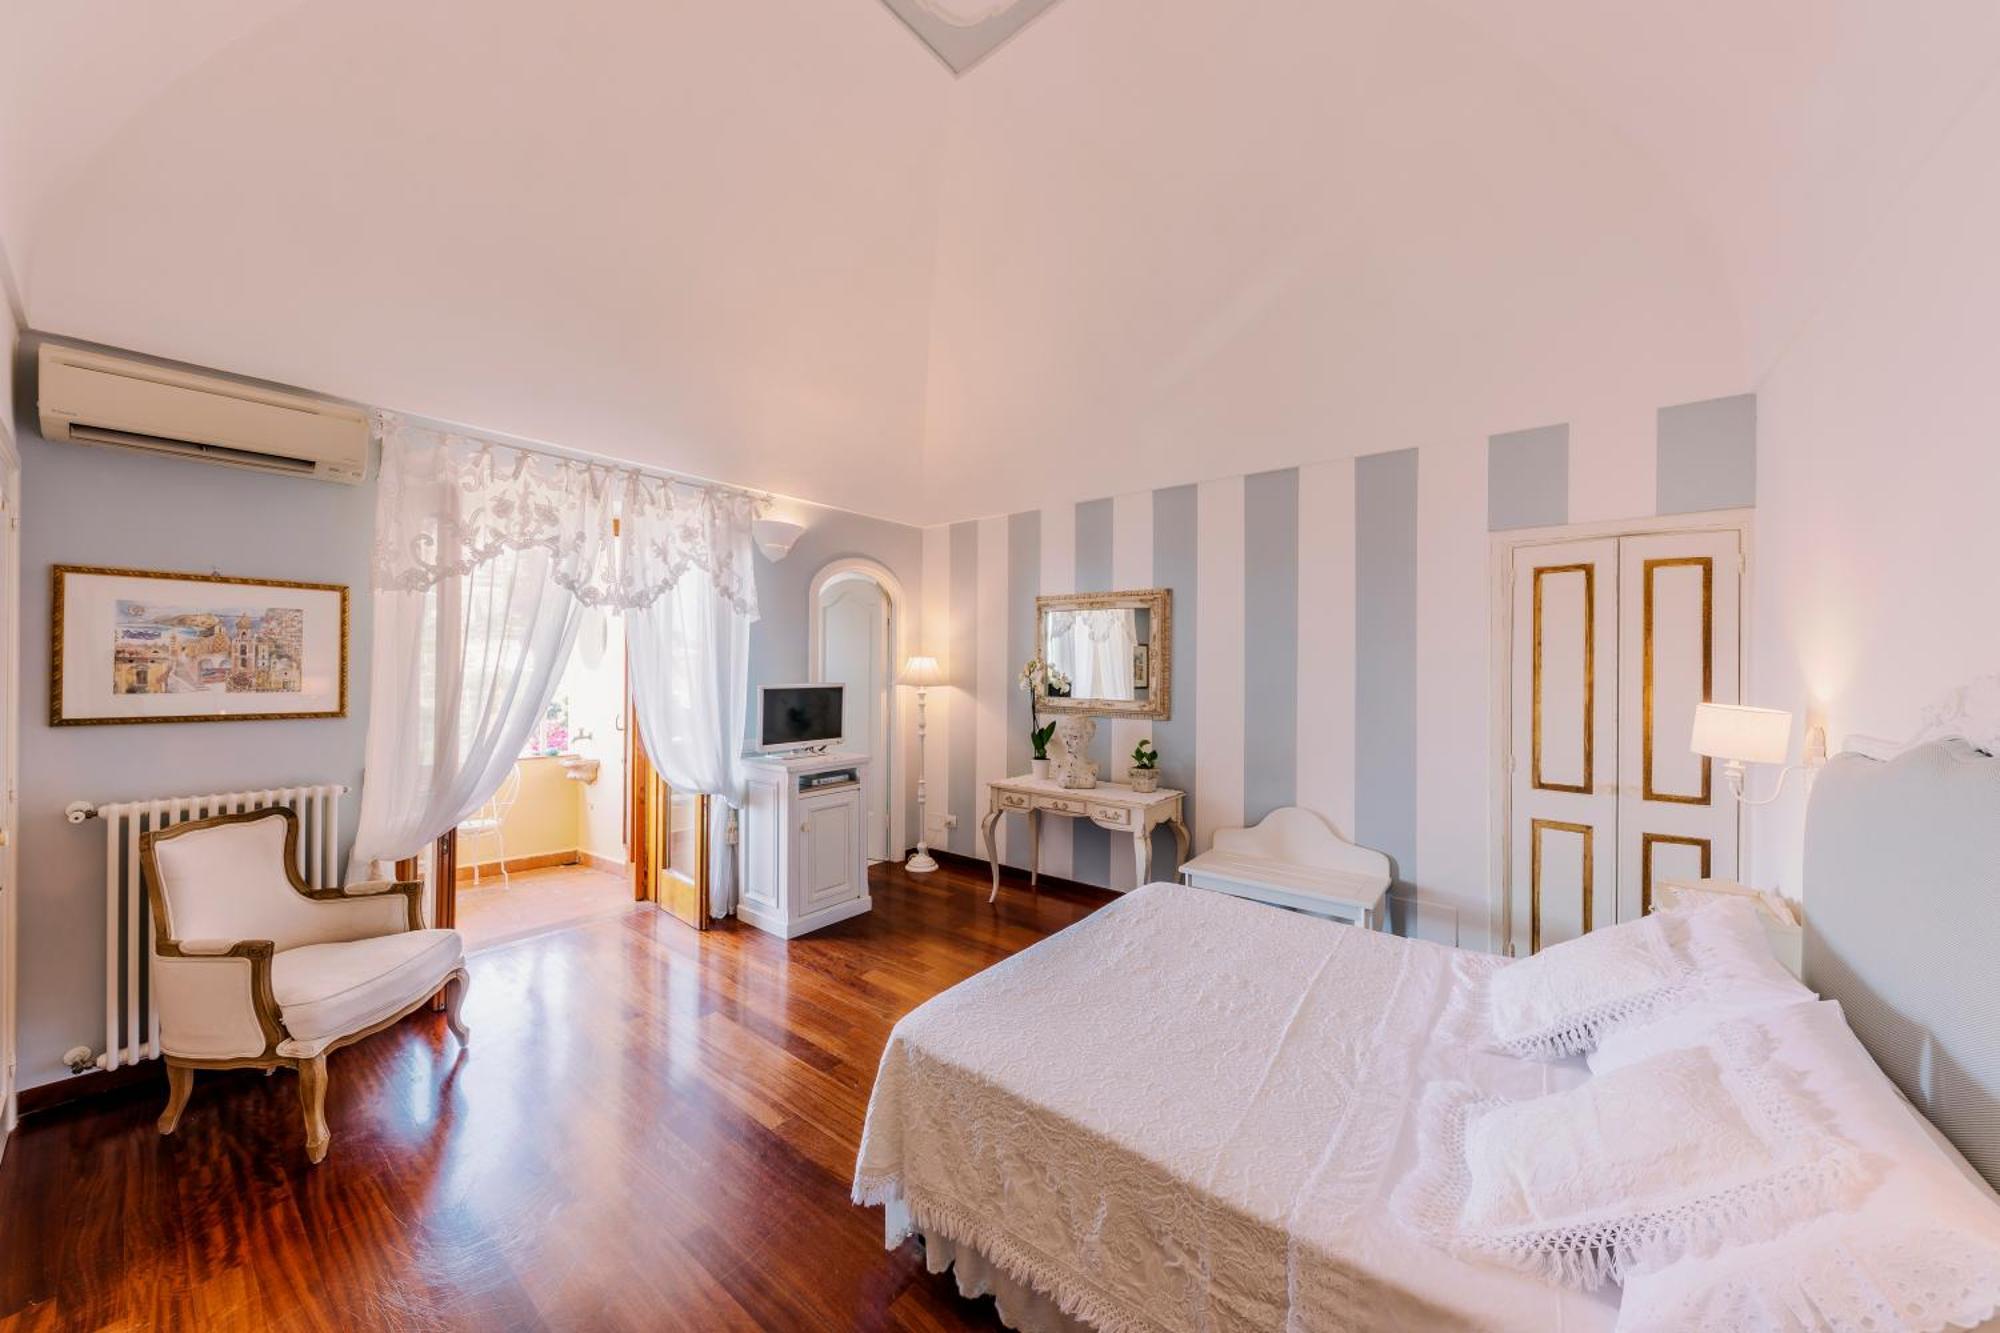 Villa Mary Suites Positano Dış mekan fotoğraf